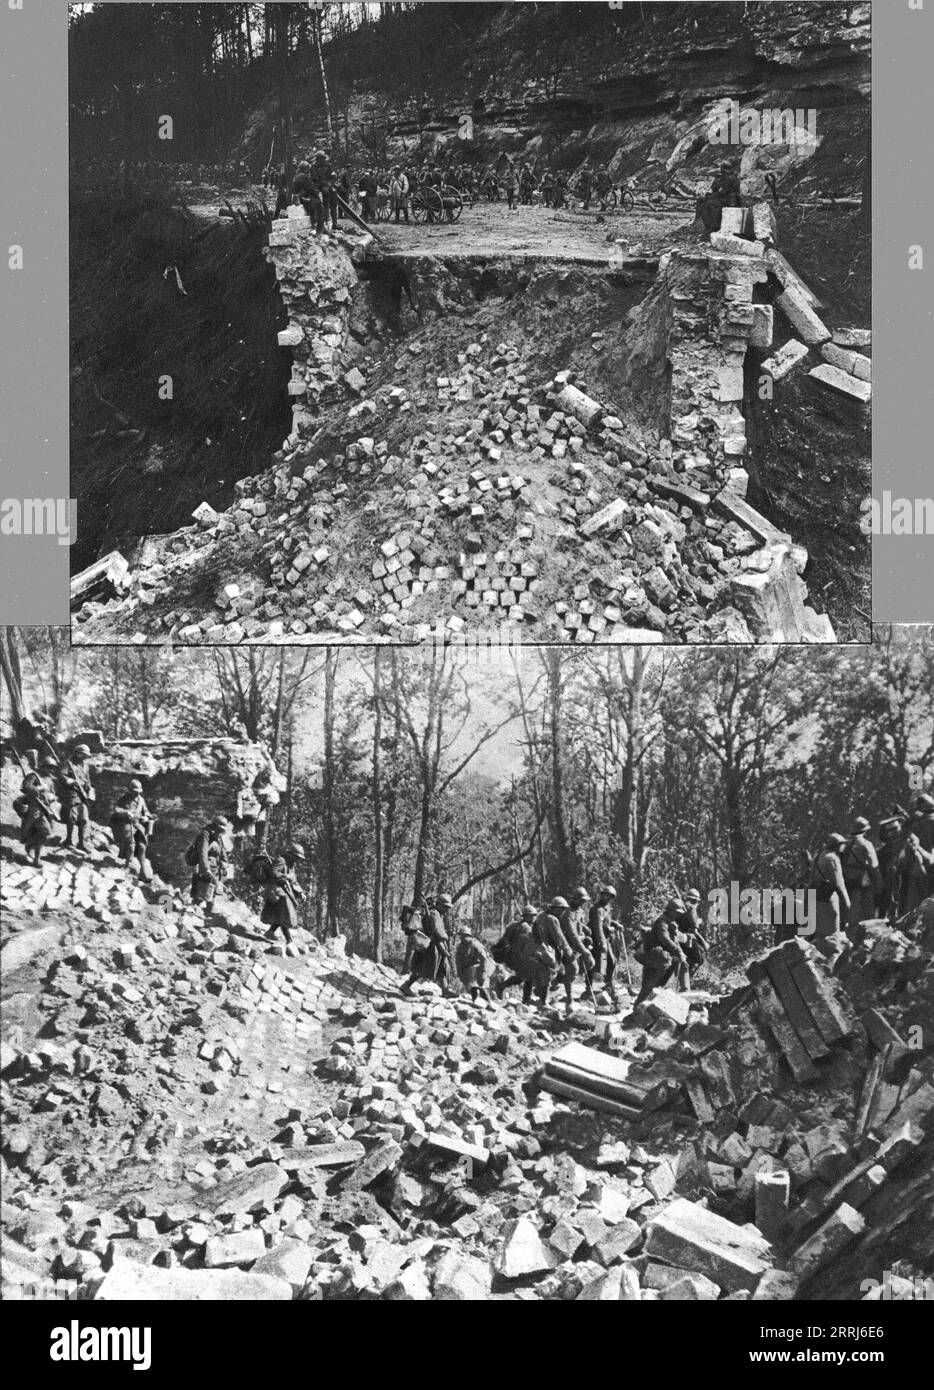 L'immense champ de Bataille; Pour arreter les forces allemandes devant la  Marne, le pont de pierre de Lagny avait ete detruit par le genie', 1914.  From "L'Album de la Guerre 1914-1919: Volume